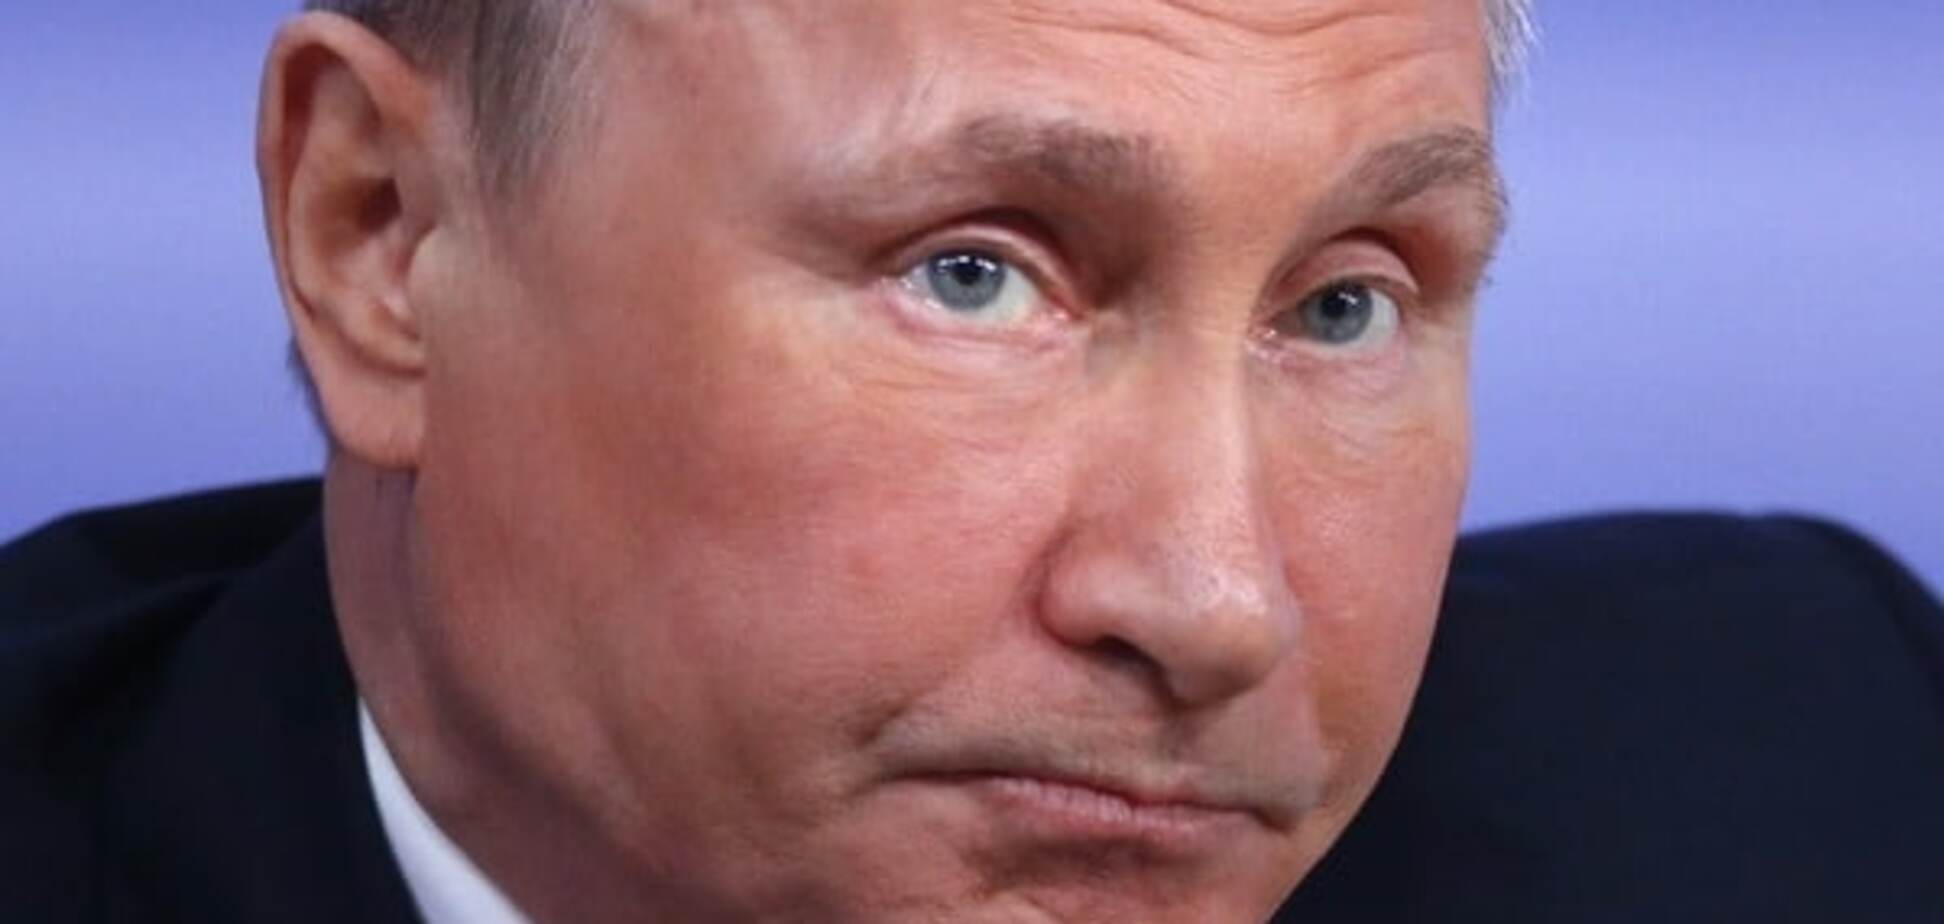 Товариш Путін, дістав ти, б**дь: українські військові 'привітали' президента Росії